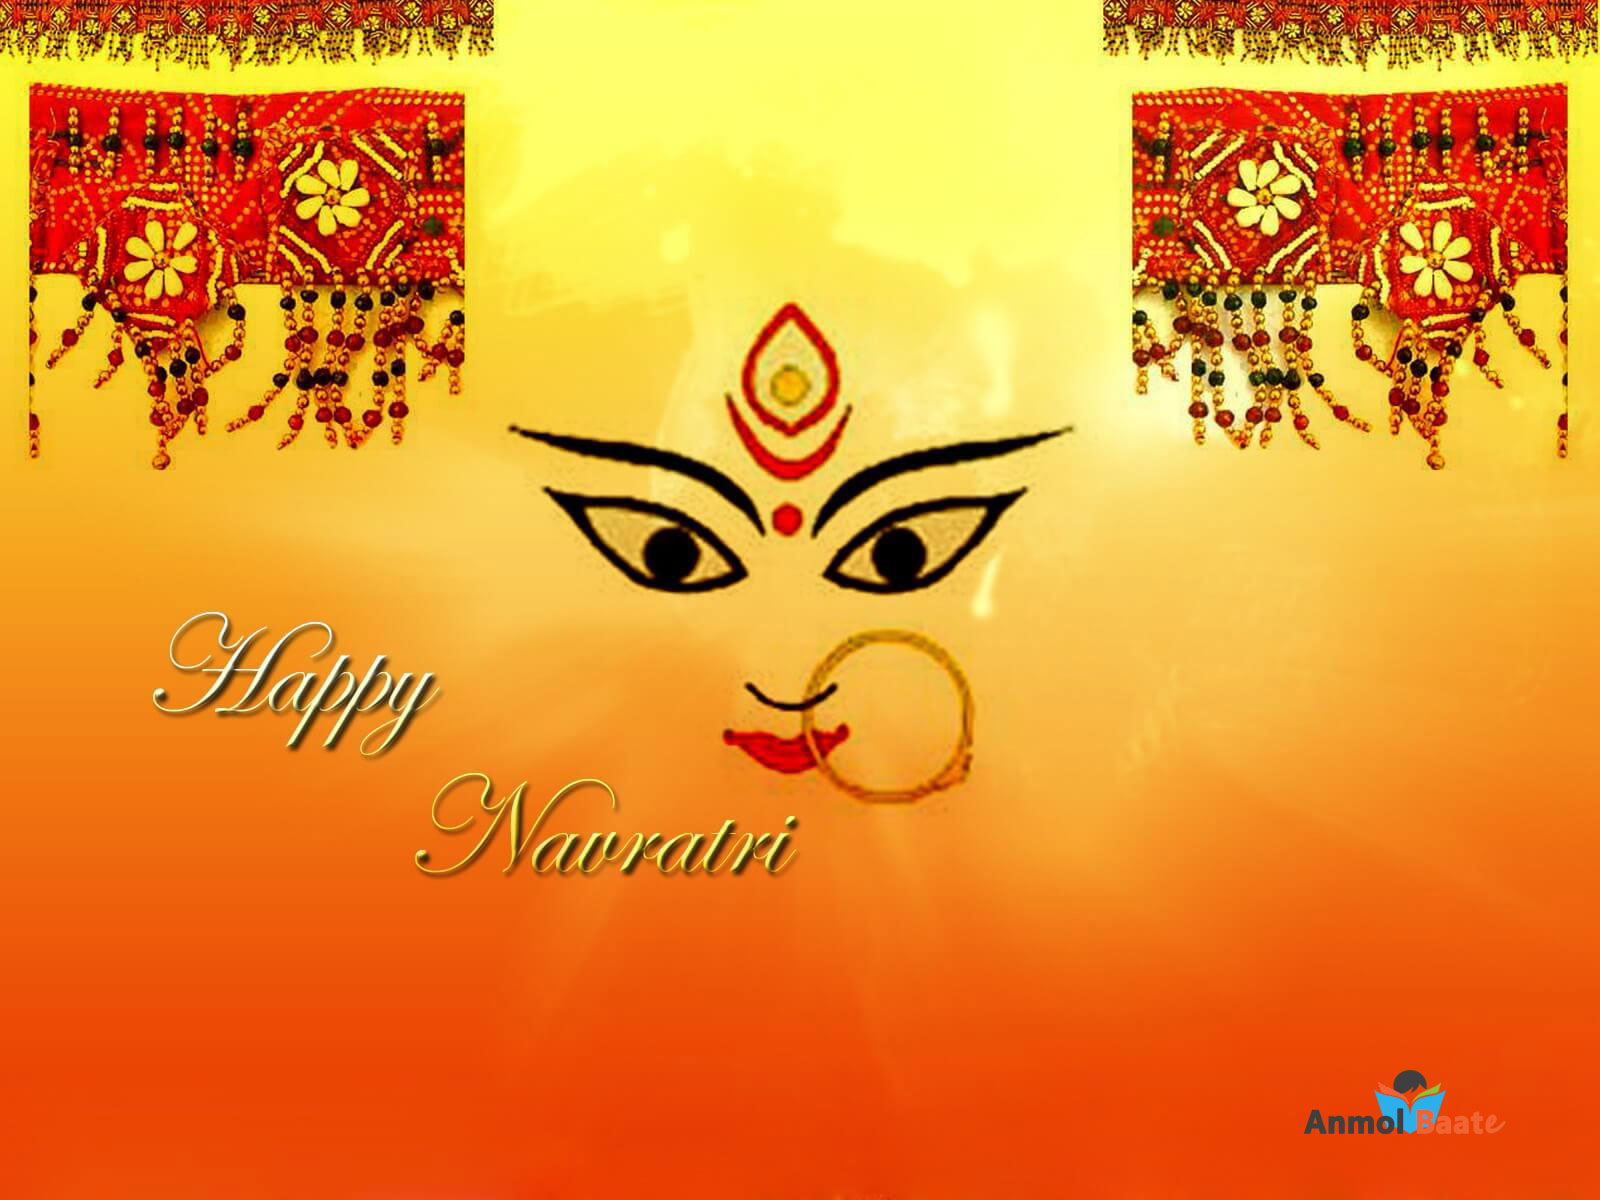 Navratri Image, Navratri Photo,happy Navratri Image, - 1080p Happy Navratri  Hd - 1600x1200 Wallpaper 